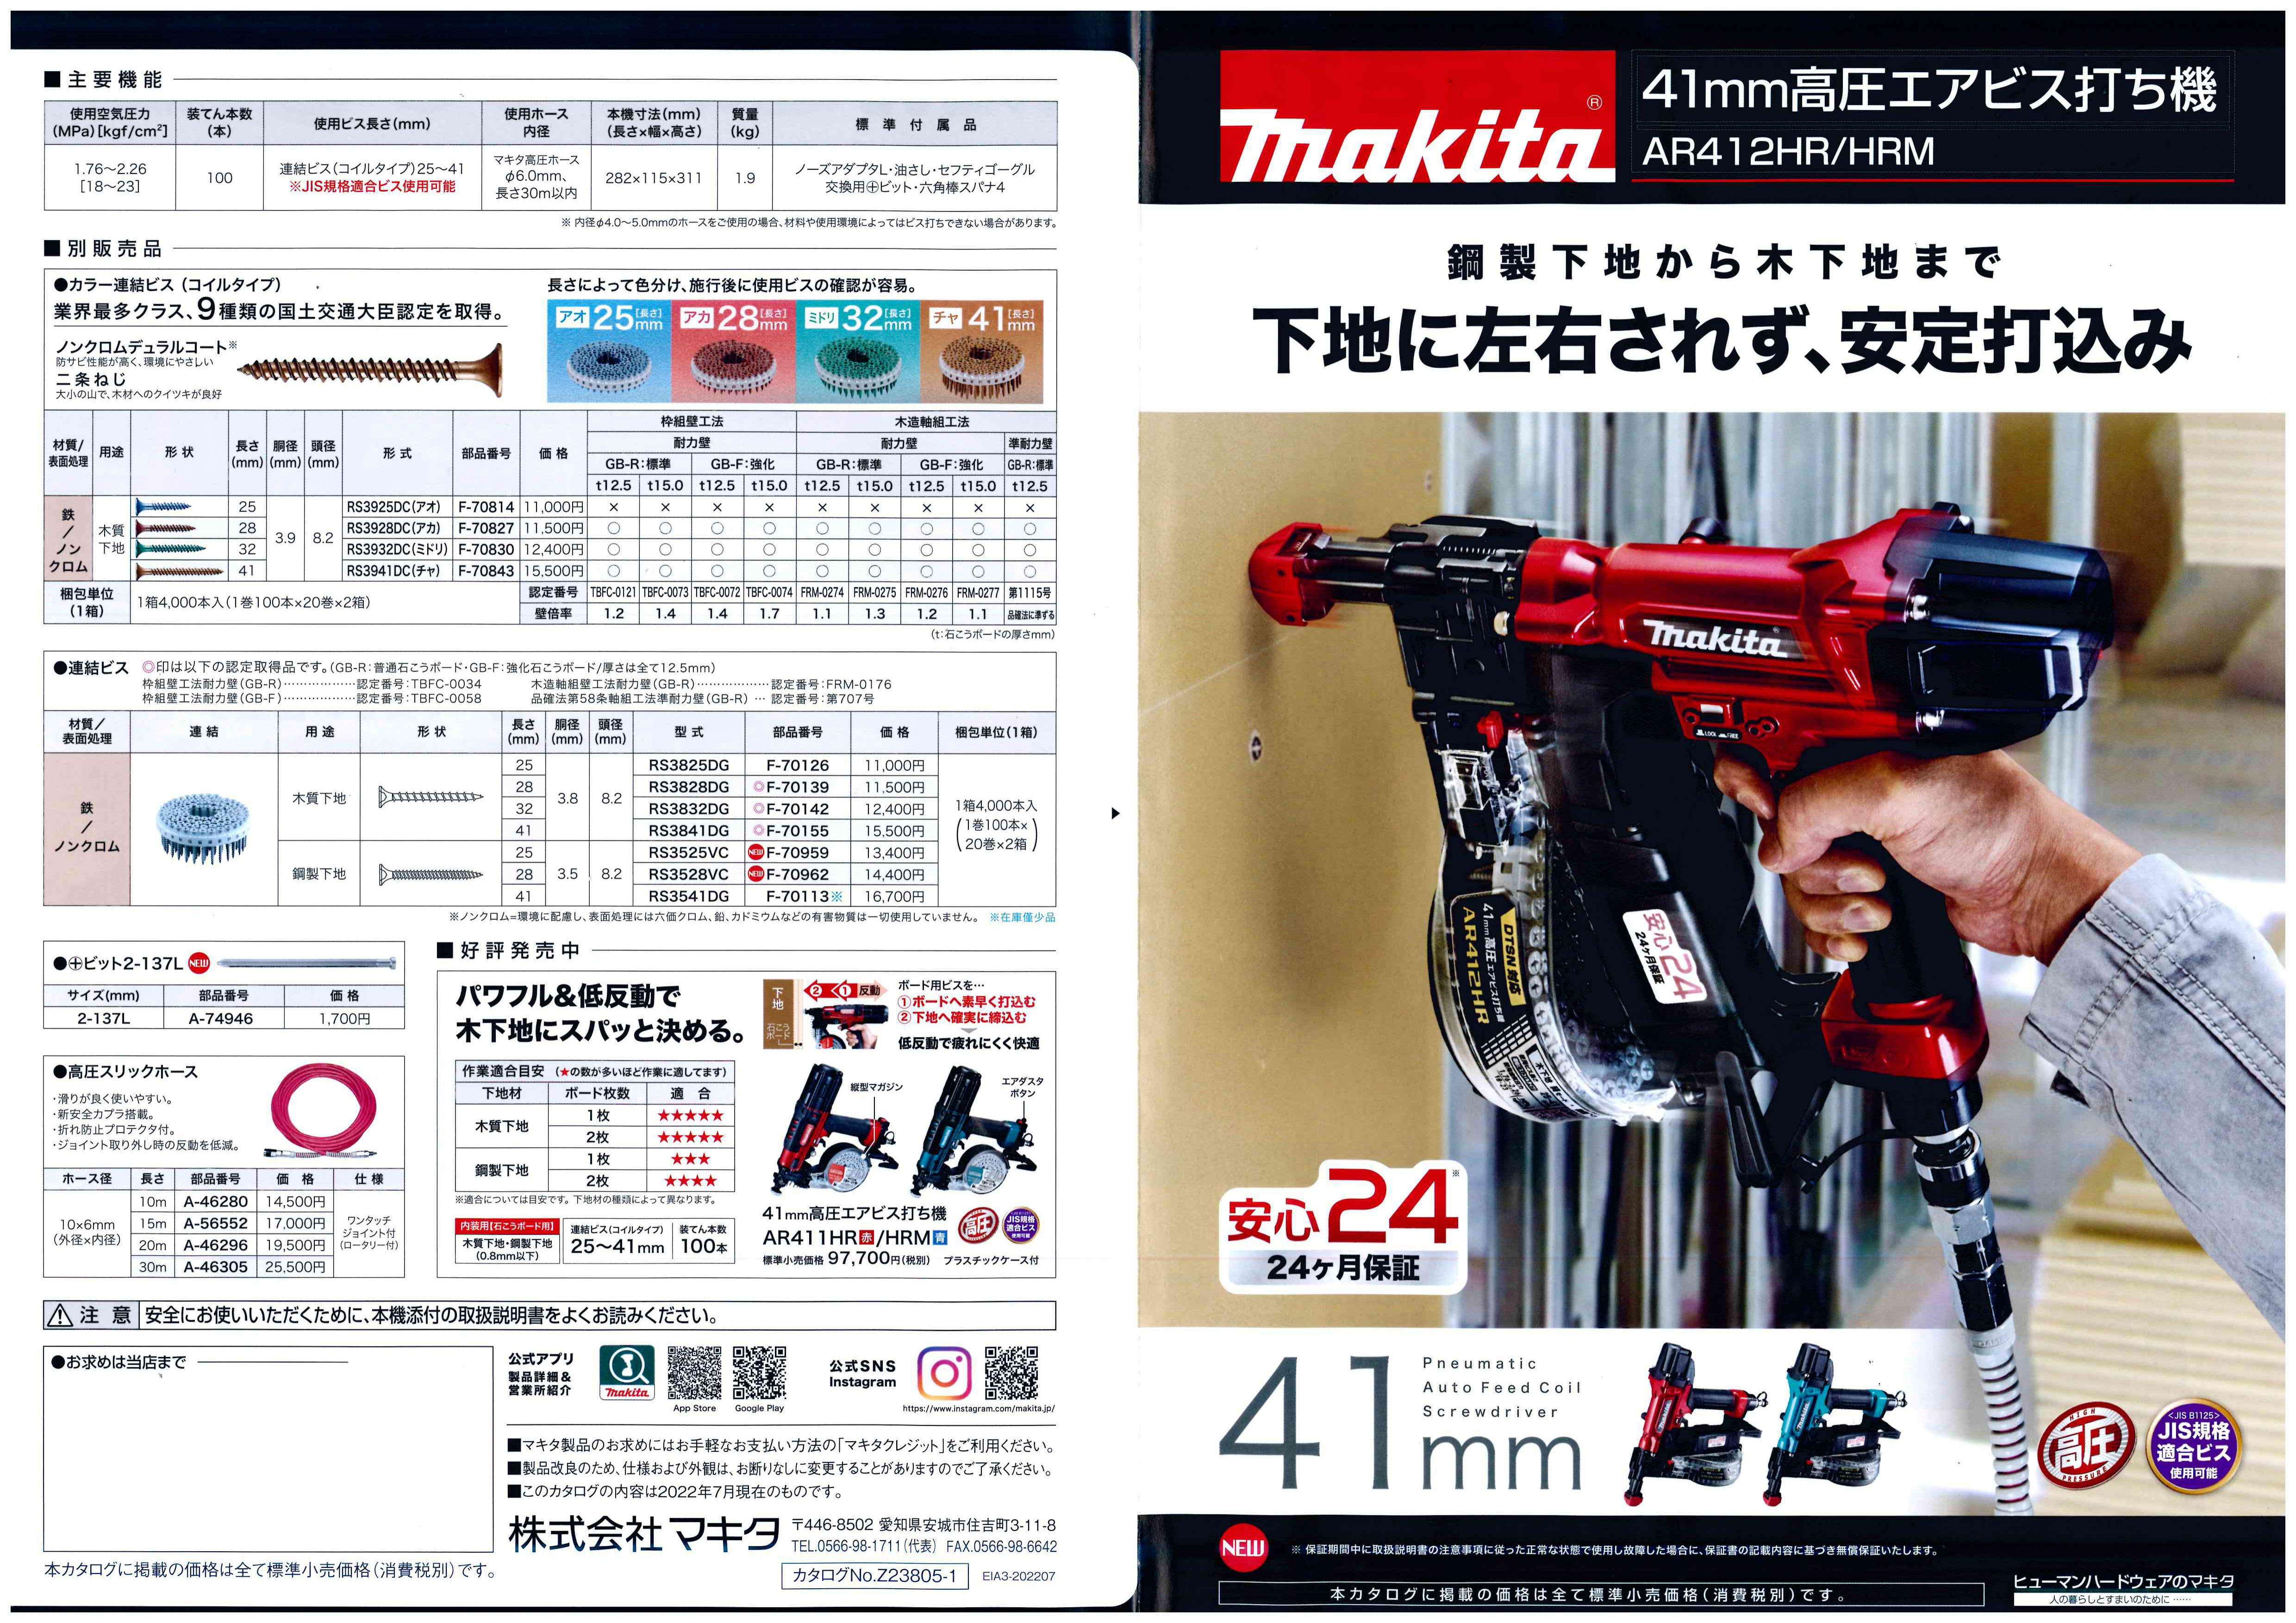 衝撃特価 マキタ makita AR412HR 高圧エアビス打ち機 赤 41mm連結ビス コイル